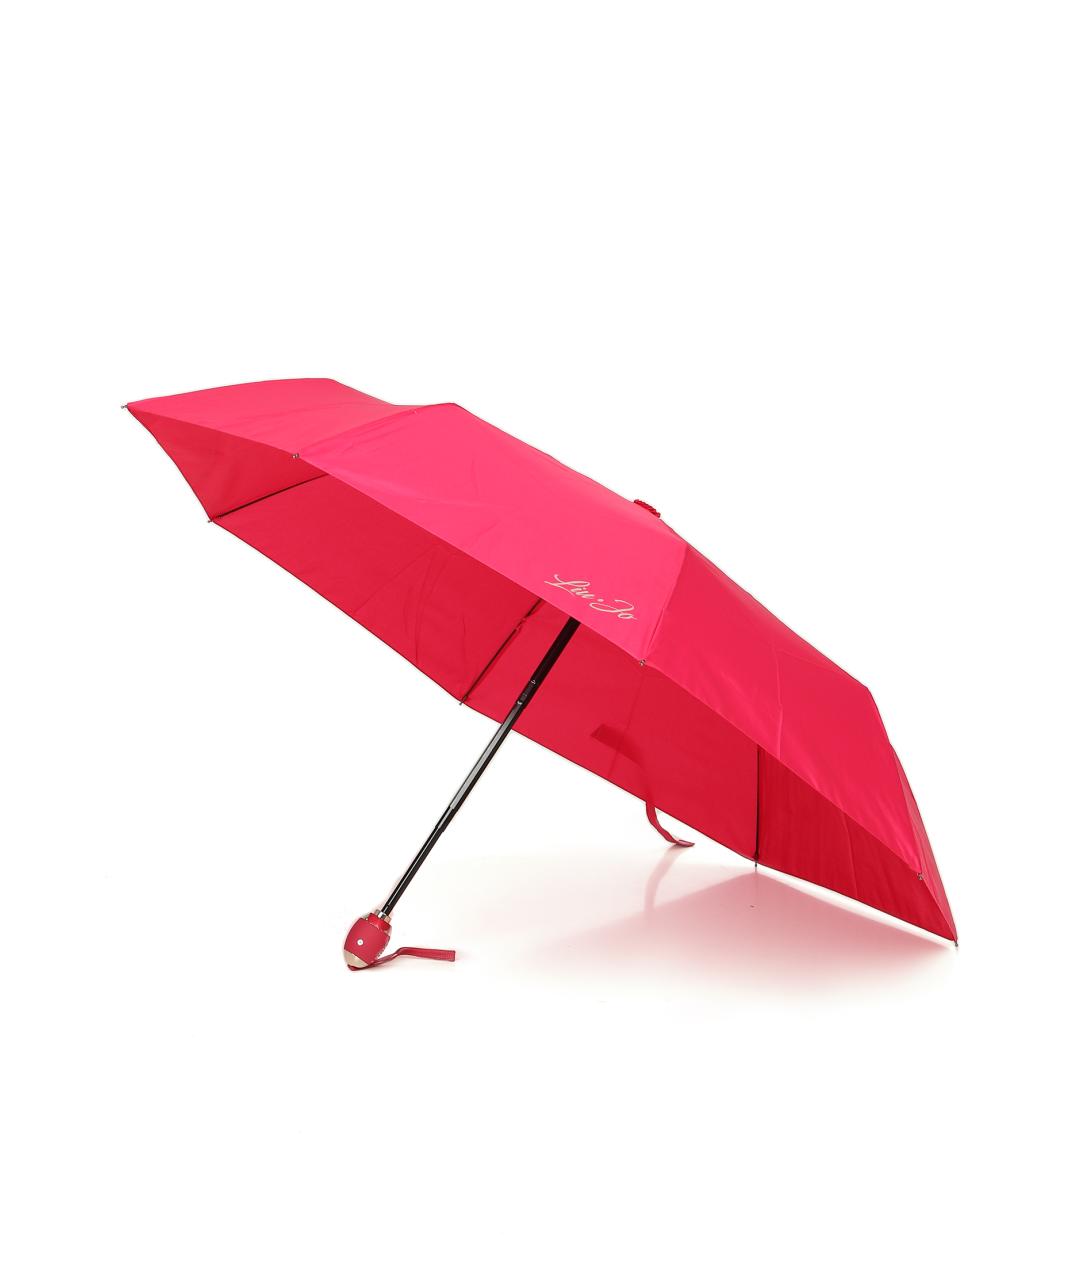 LIU JO Розовый зонт, фото 1